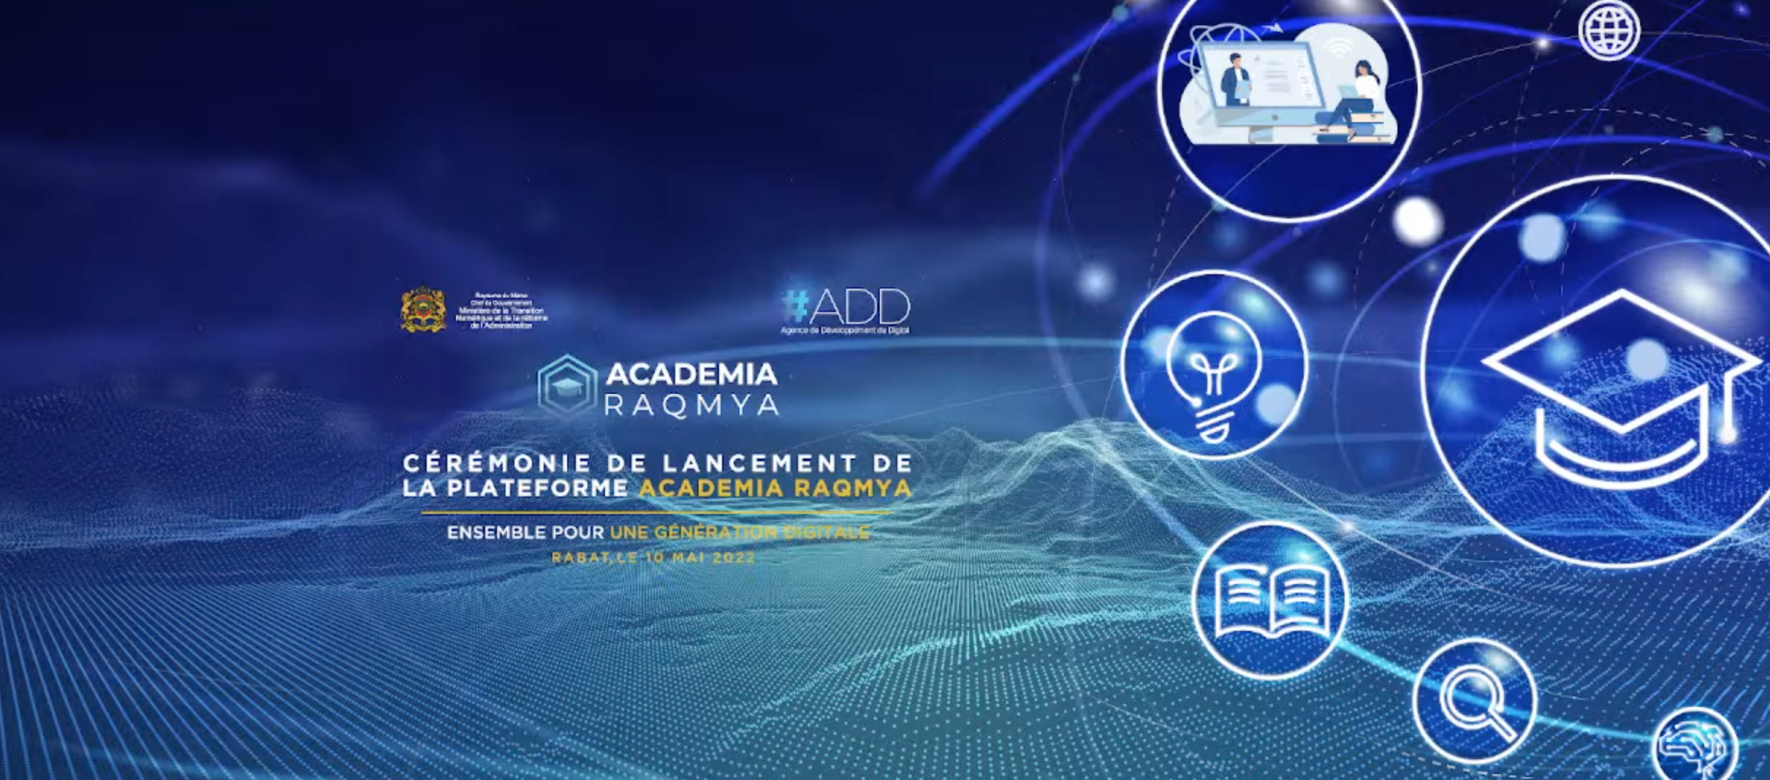 Maroc : L'Agence de développement du digital du Maroc (ADD) lance une plateforme nationale de formation à distance dans le domaine du digital